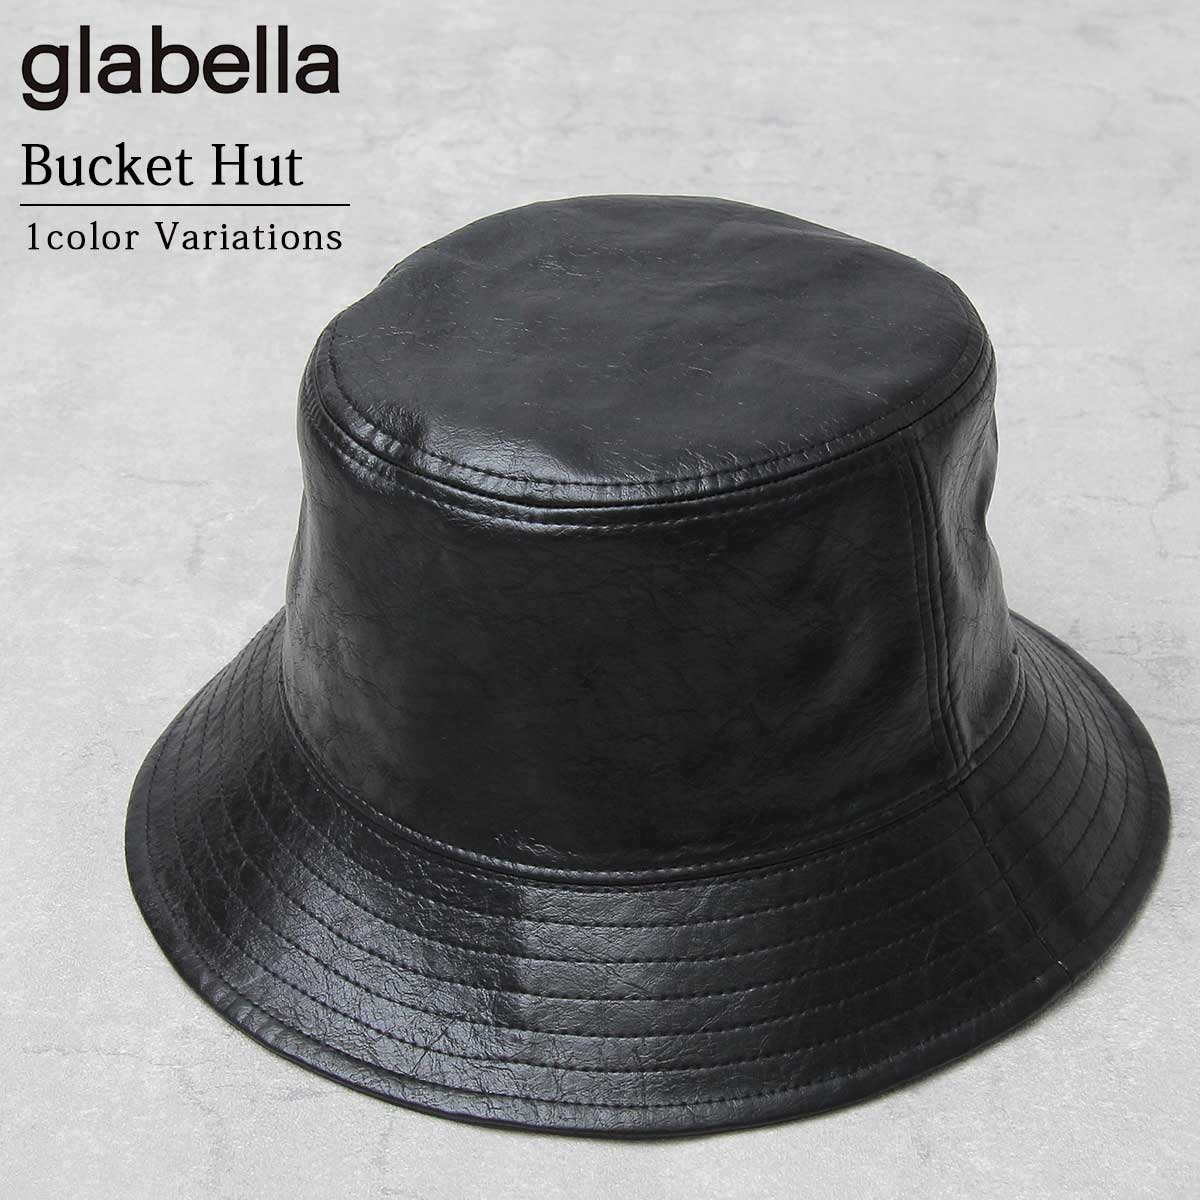 glabella バケットハット メンズ レデイース ユニセックス ハット 